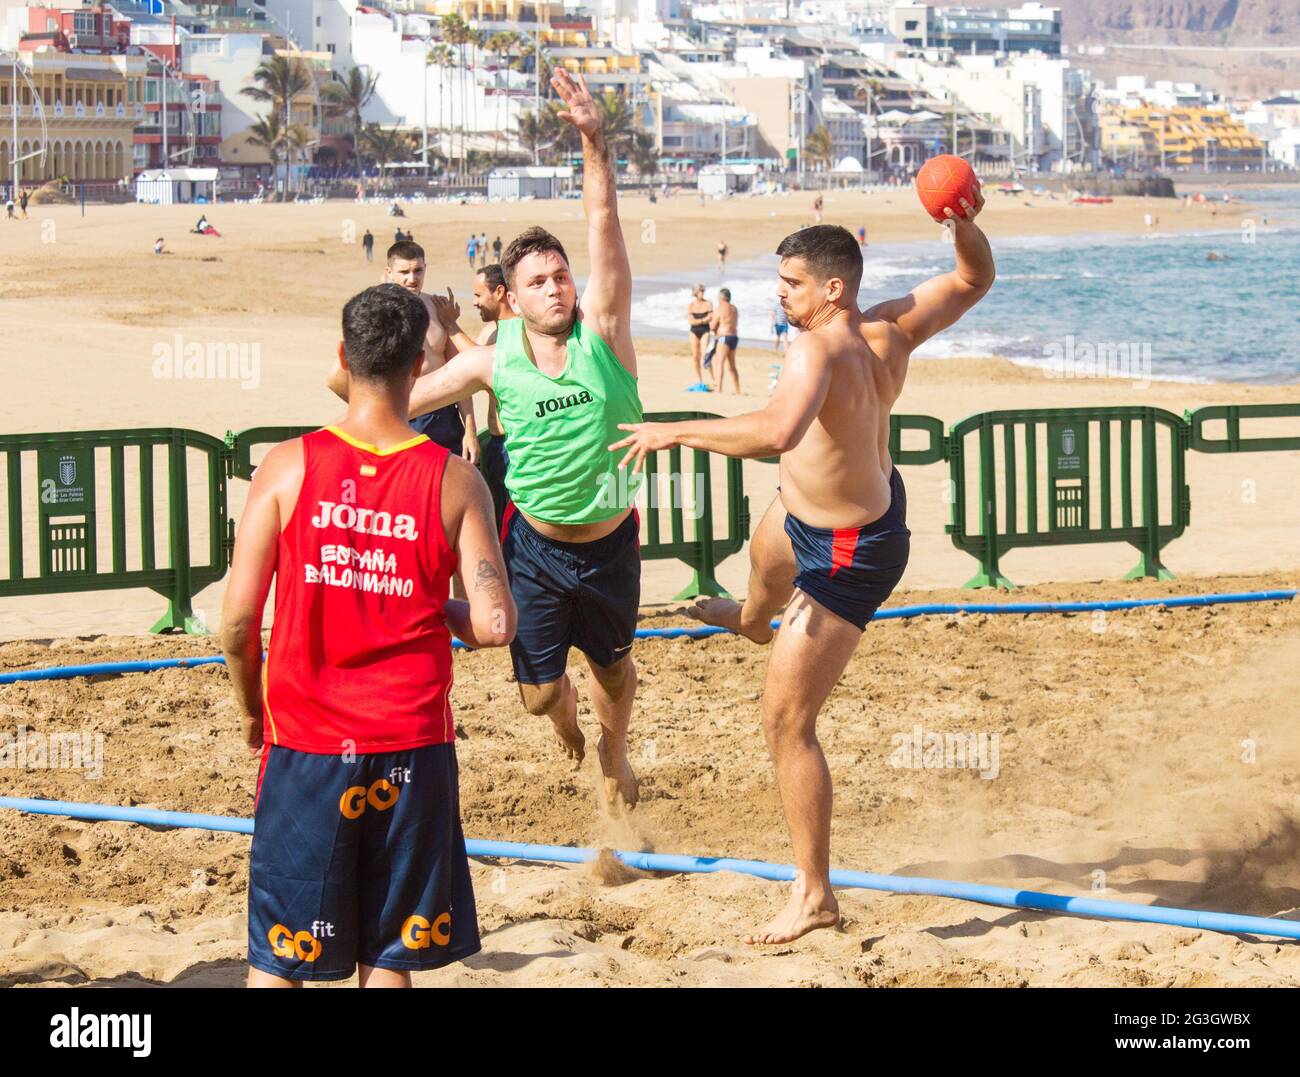 Las Palmas, Gran Canaria, Kanarische Inseln, Spanien. Juni 2021. Teams trainieren vor einem internationalen Handball-Turnier am Strand von Las Palmas auf Gran Canaria (18.-20. Juni). Quelle: Alan Dawson/Alamy Live News Stockfoto